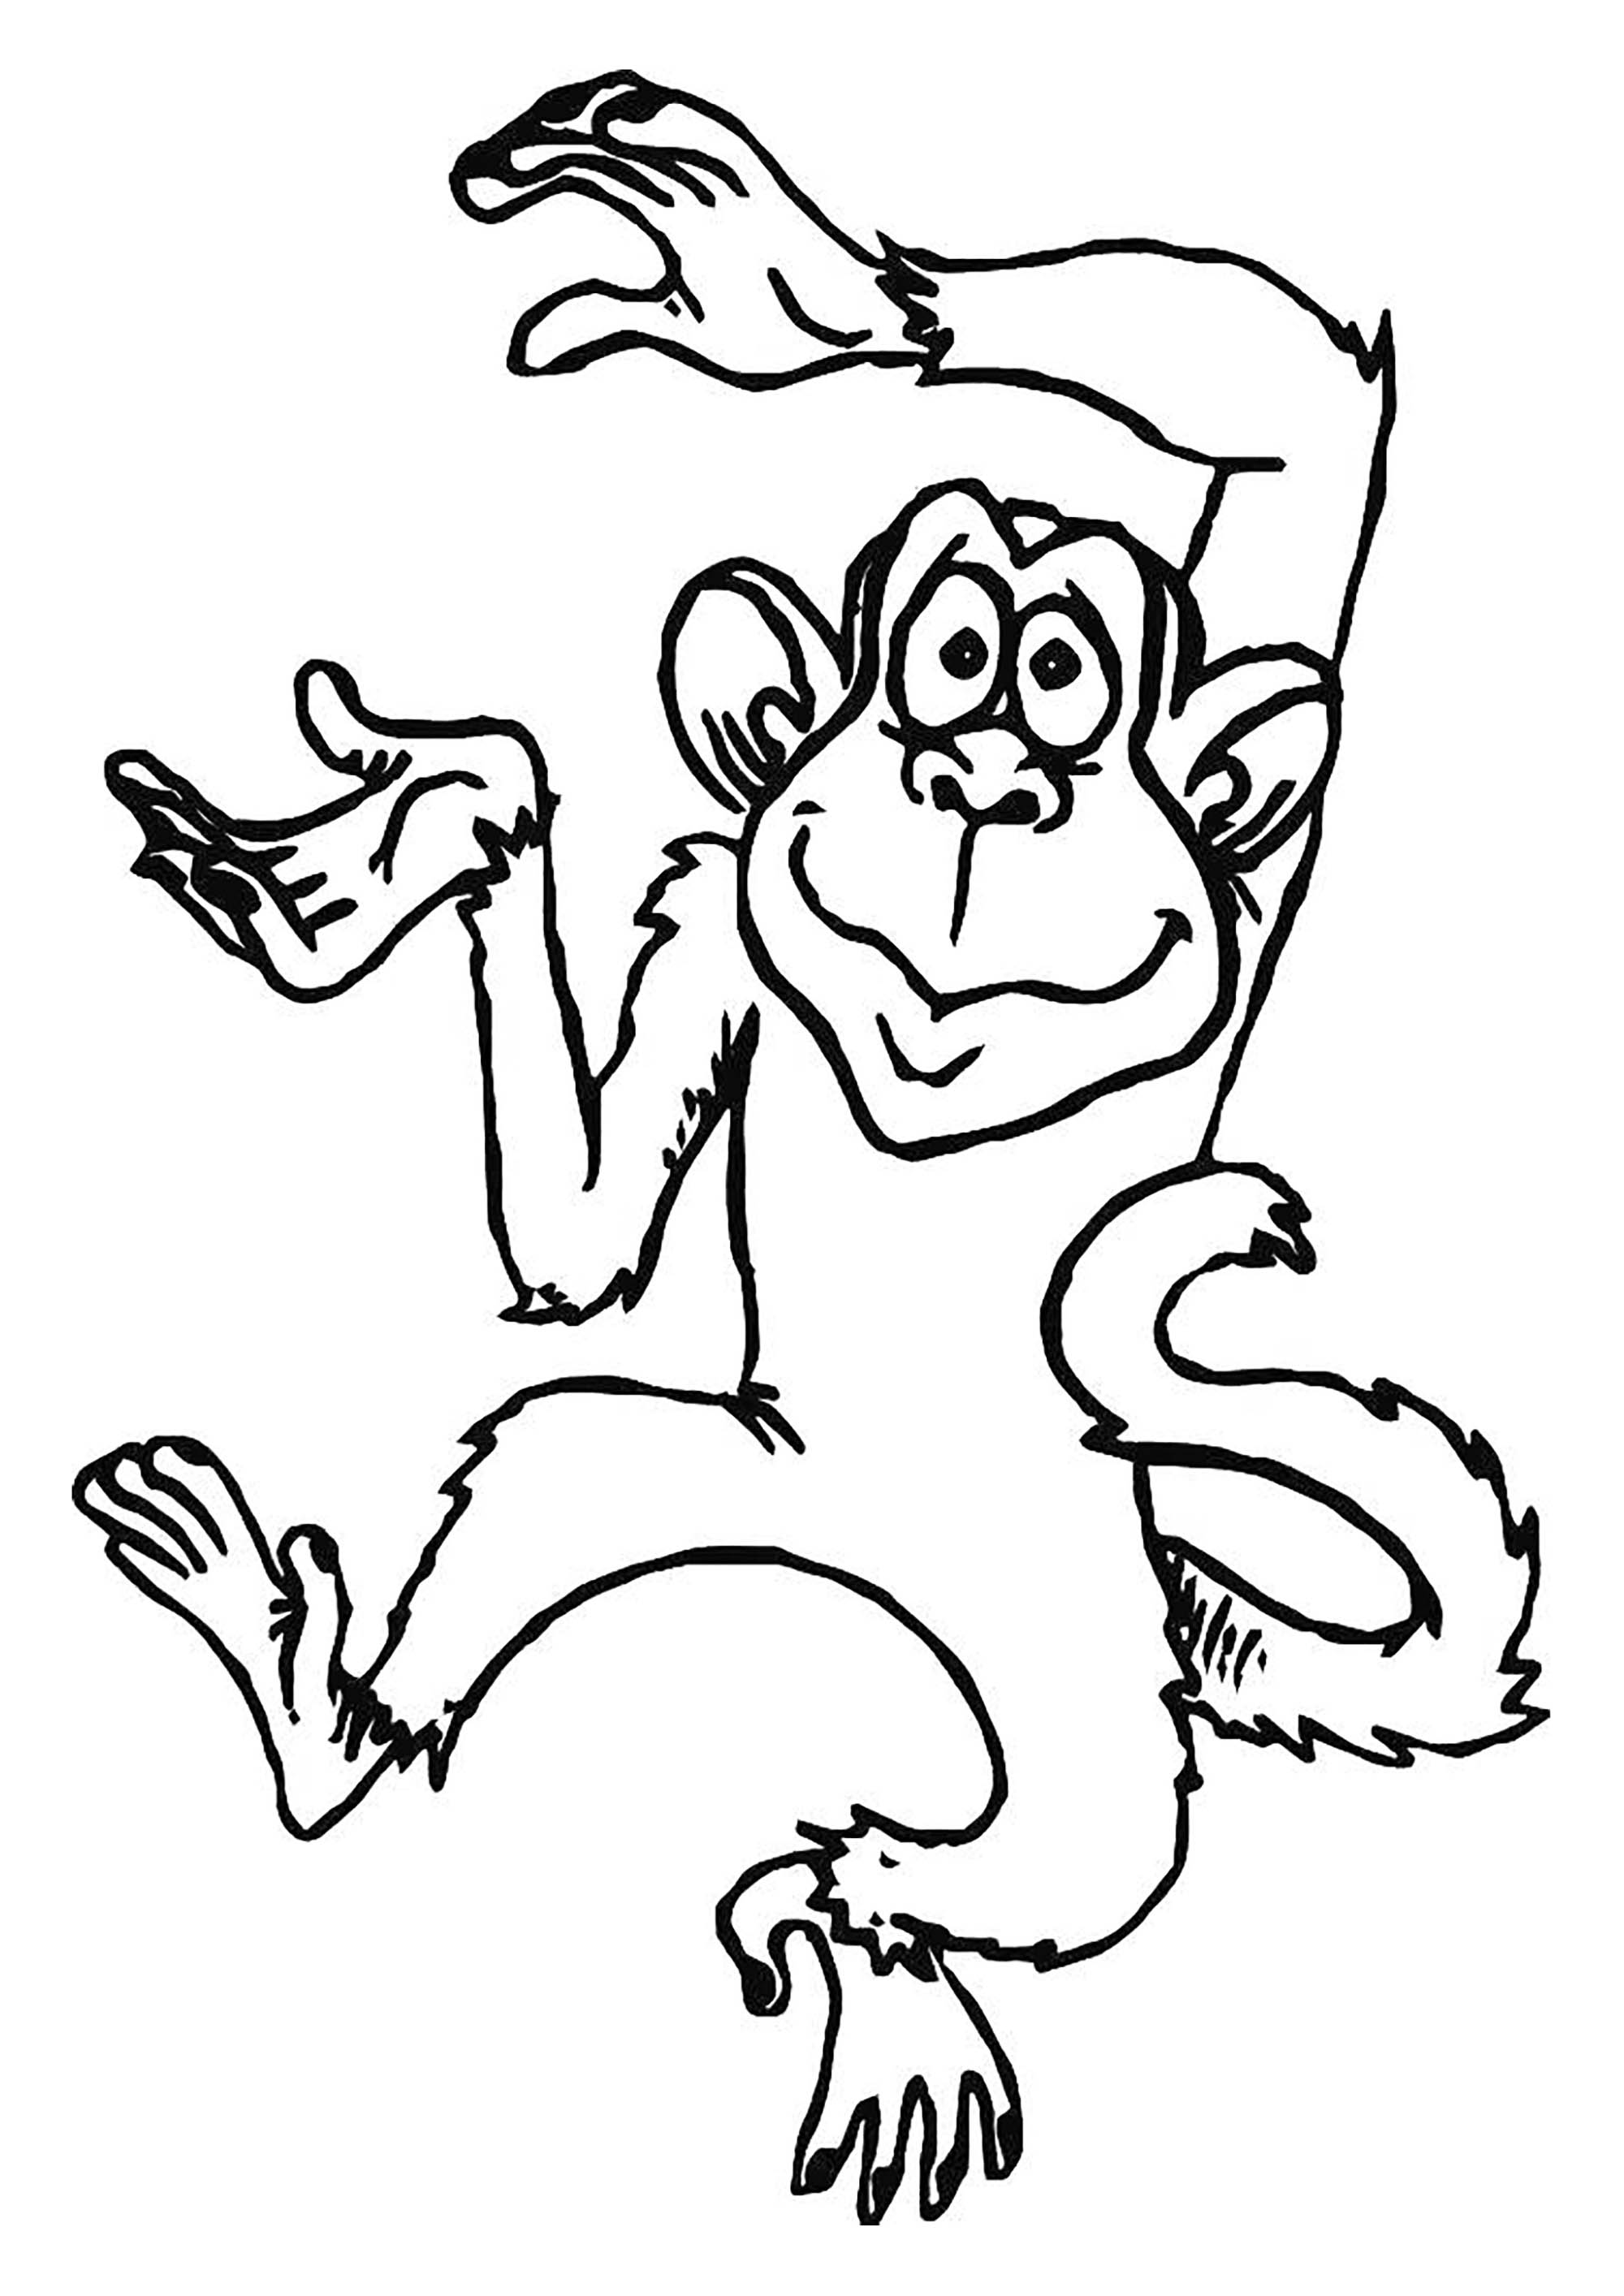 Macaco para imprimir e colorir  Páginas de colorir com animais